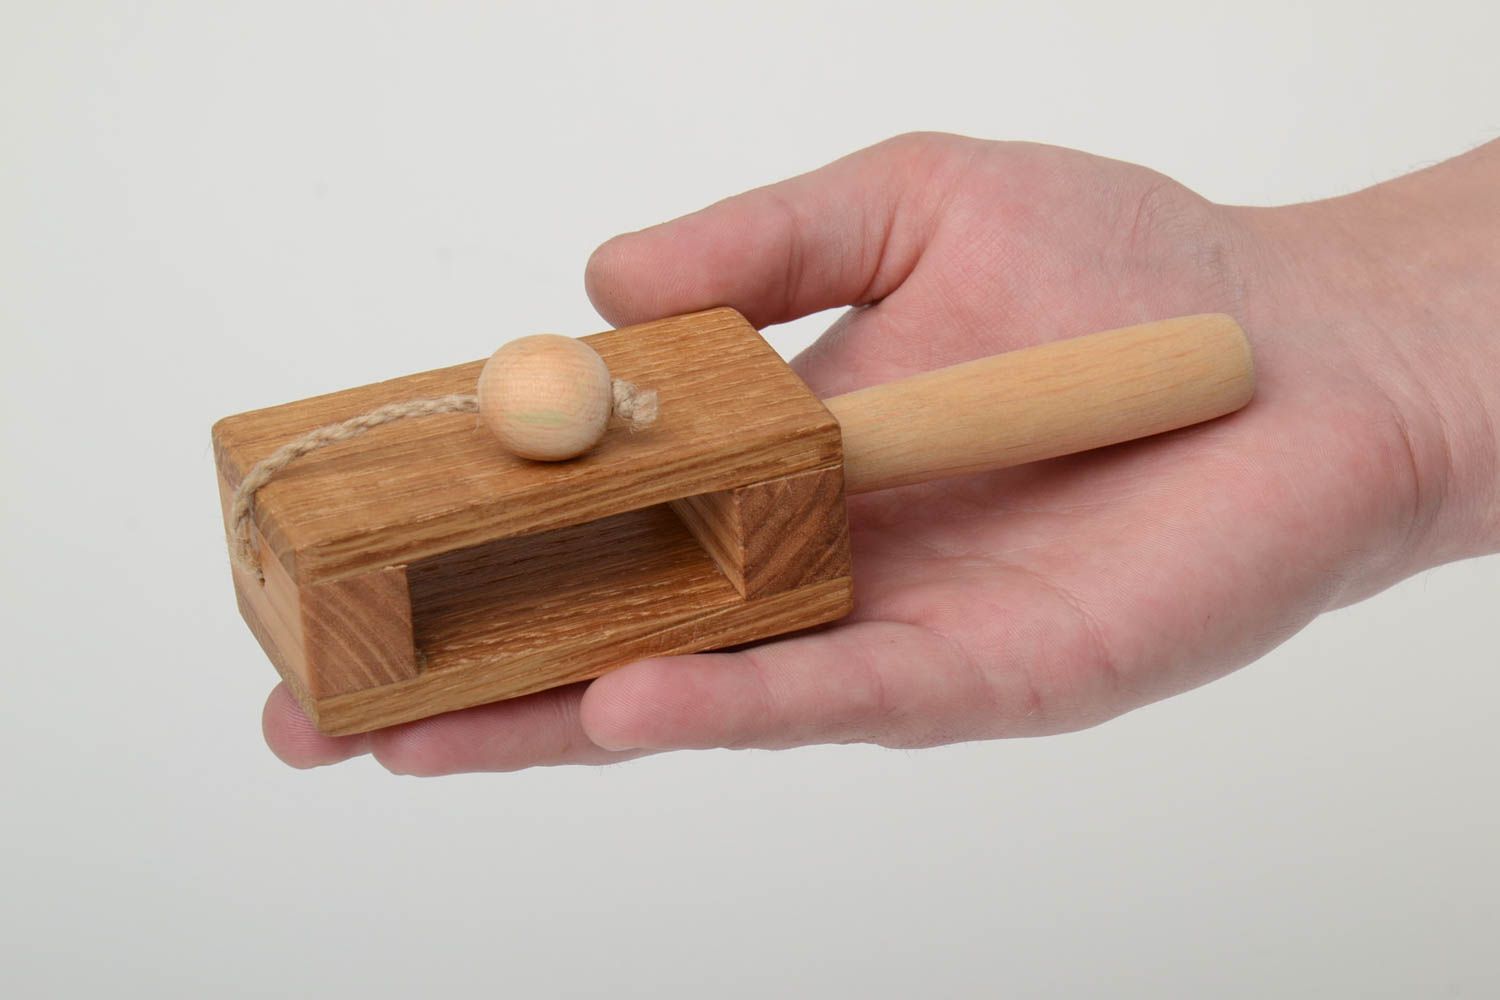 Öko Holz Spielzeug für Kinder mit Leinöl durchtränkt aus Eichenholz handgemacht foto 5